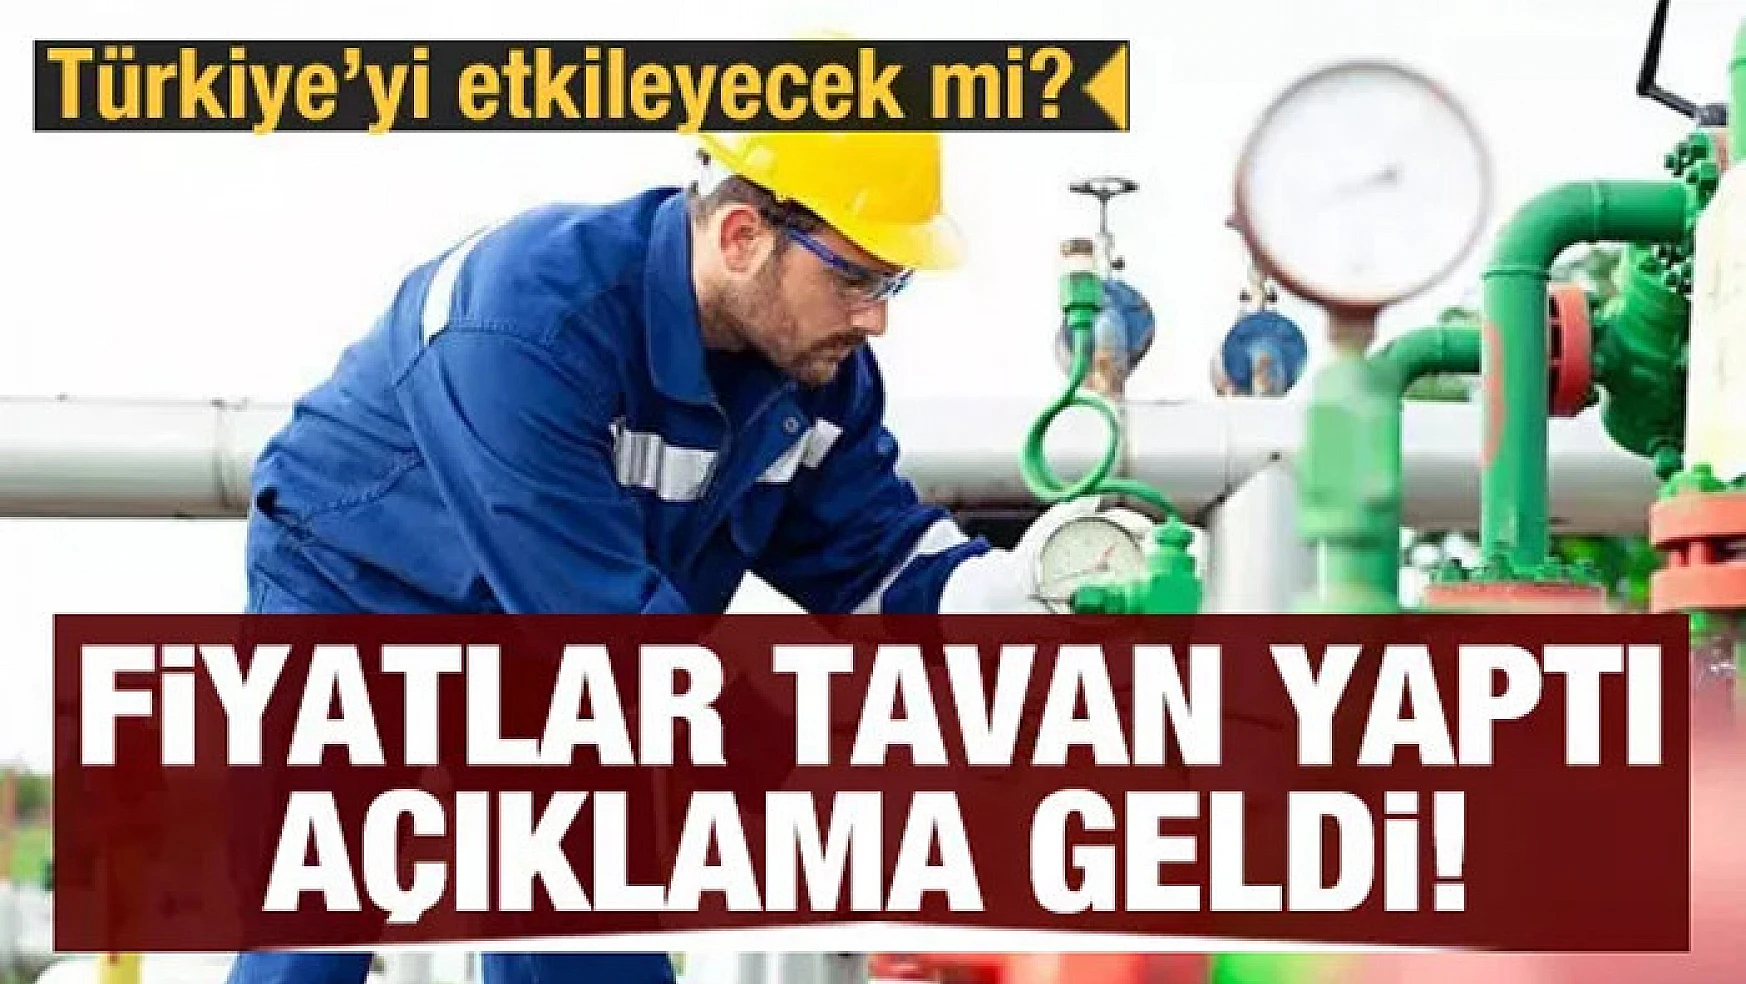 Doğal gazda fiyat artışı Türkiye'ye etkilemez